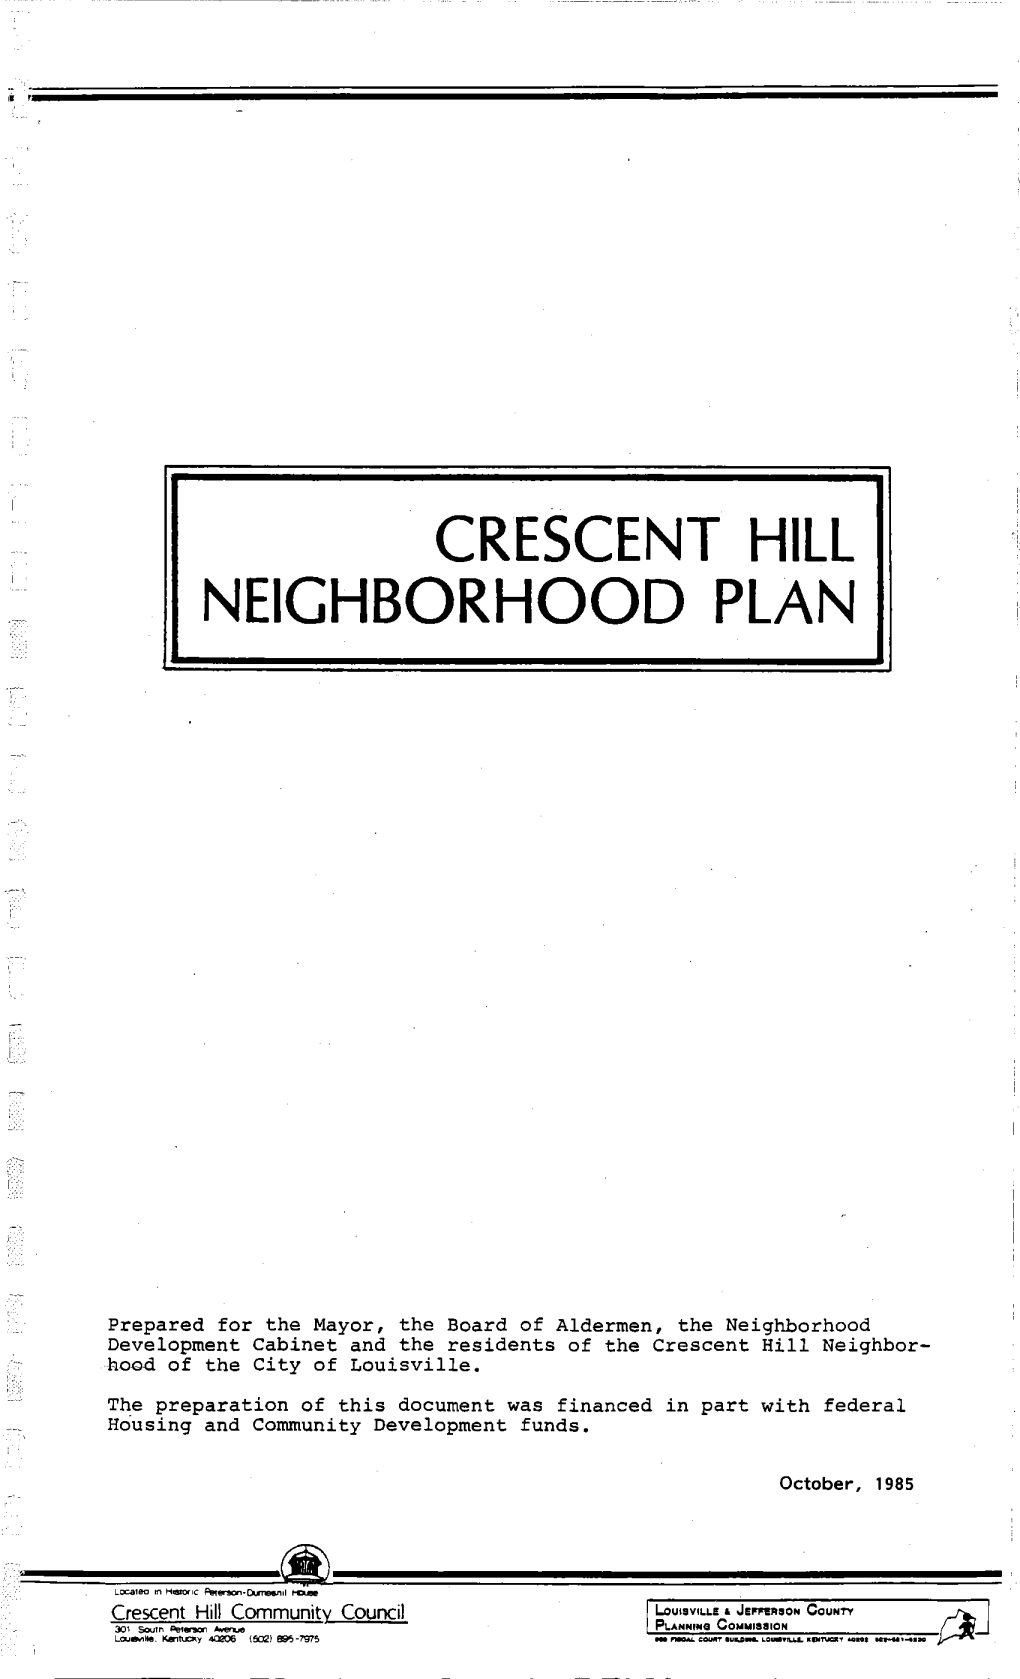 Crescent Hill Neighborhood Plan